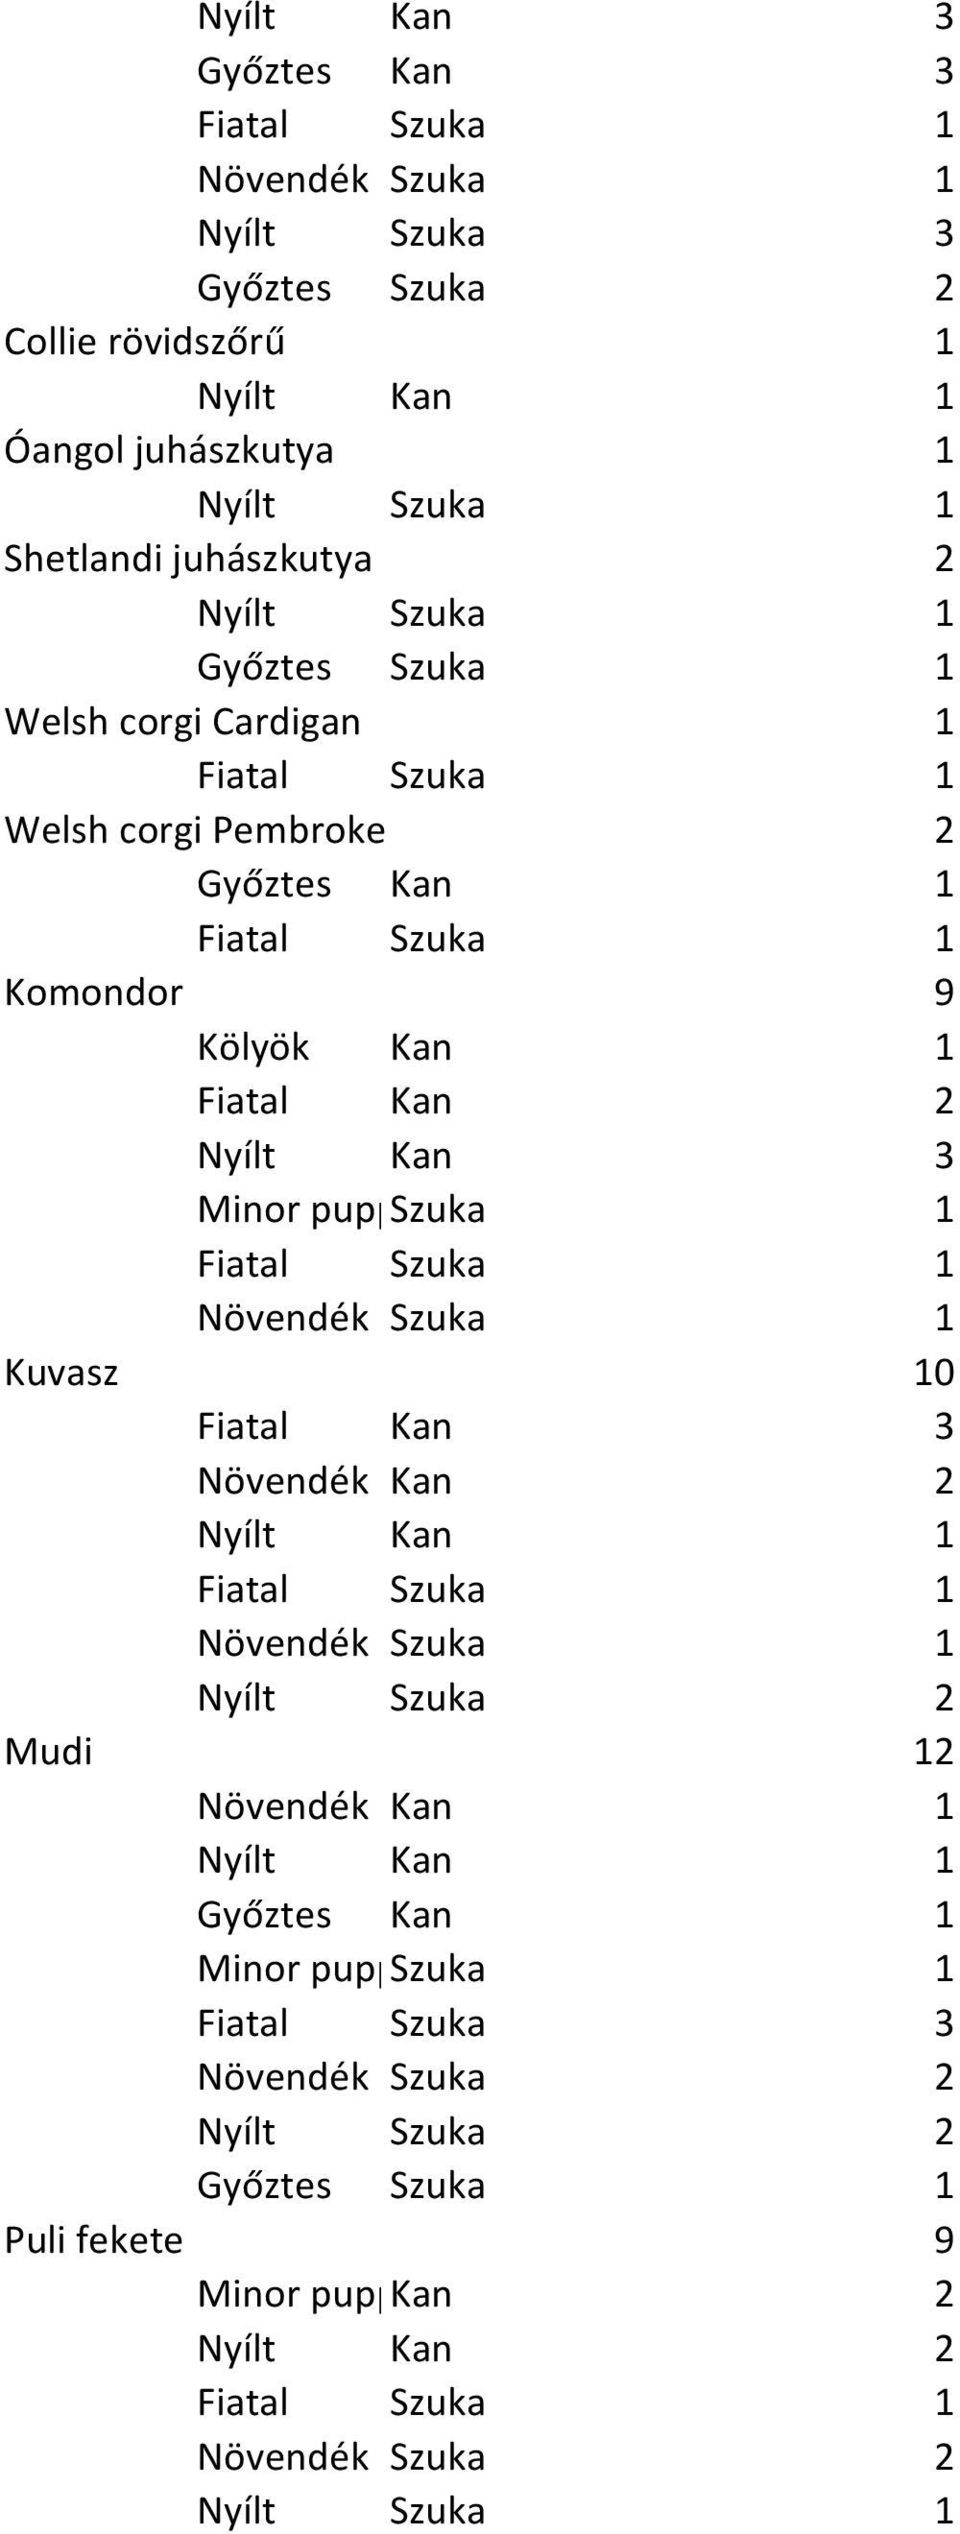 Welsh corgi Pembroke 2 Komondor 9 Nyílt Kan 3 Kuvasz 10 Fiatal Kan 3